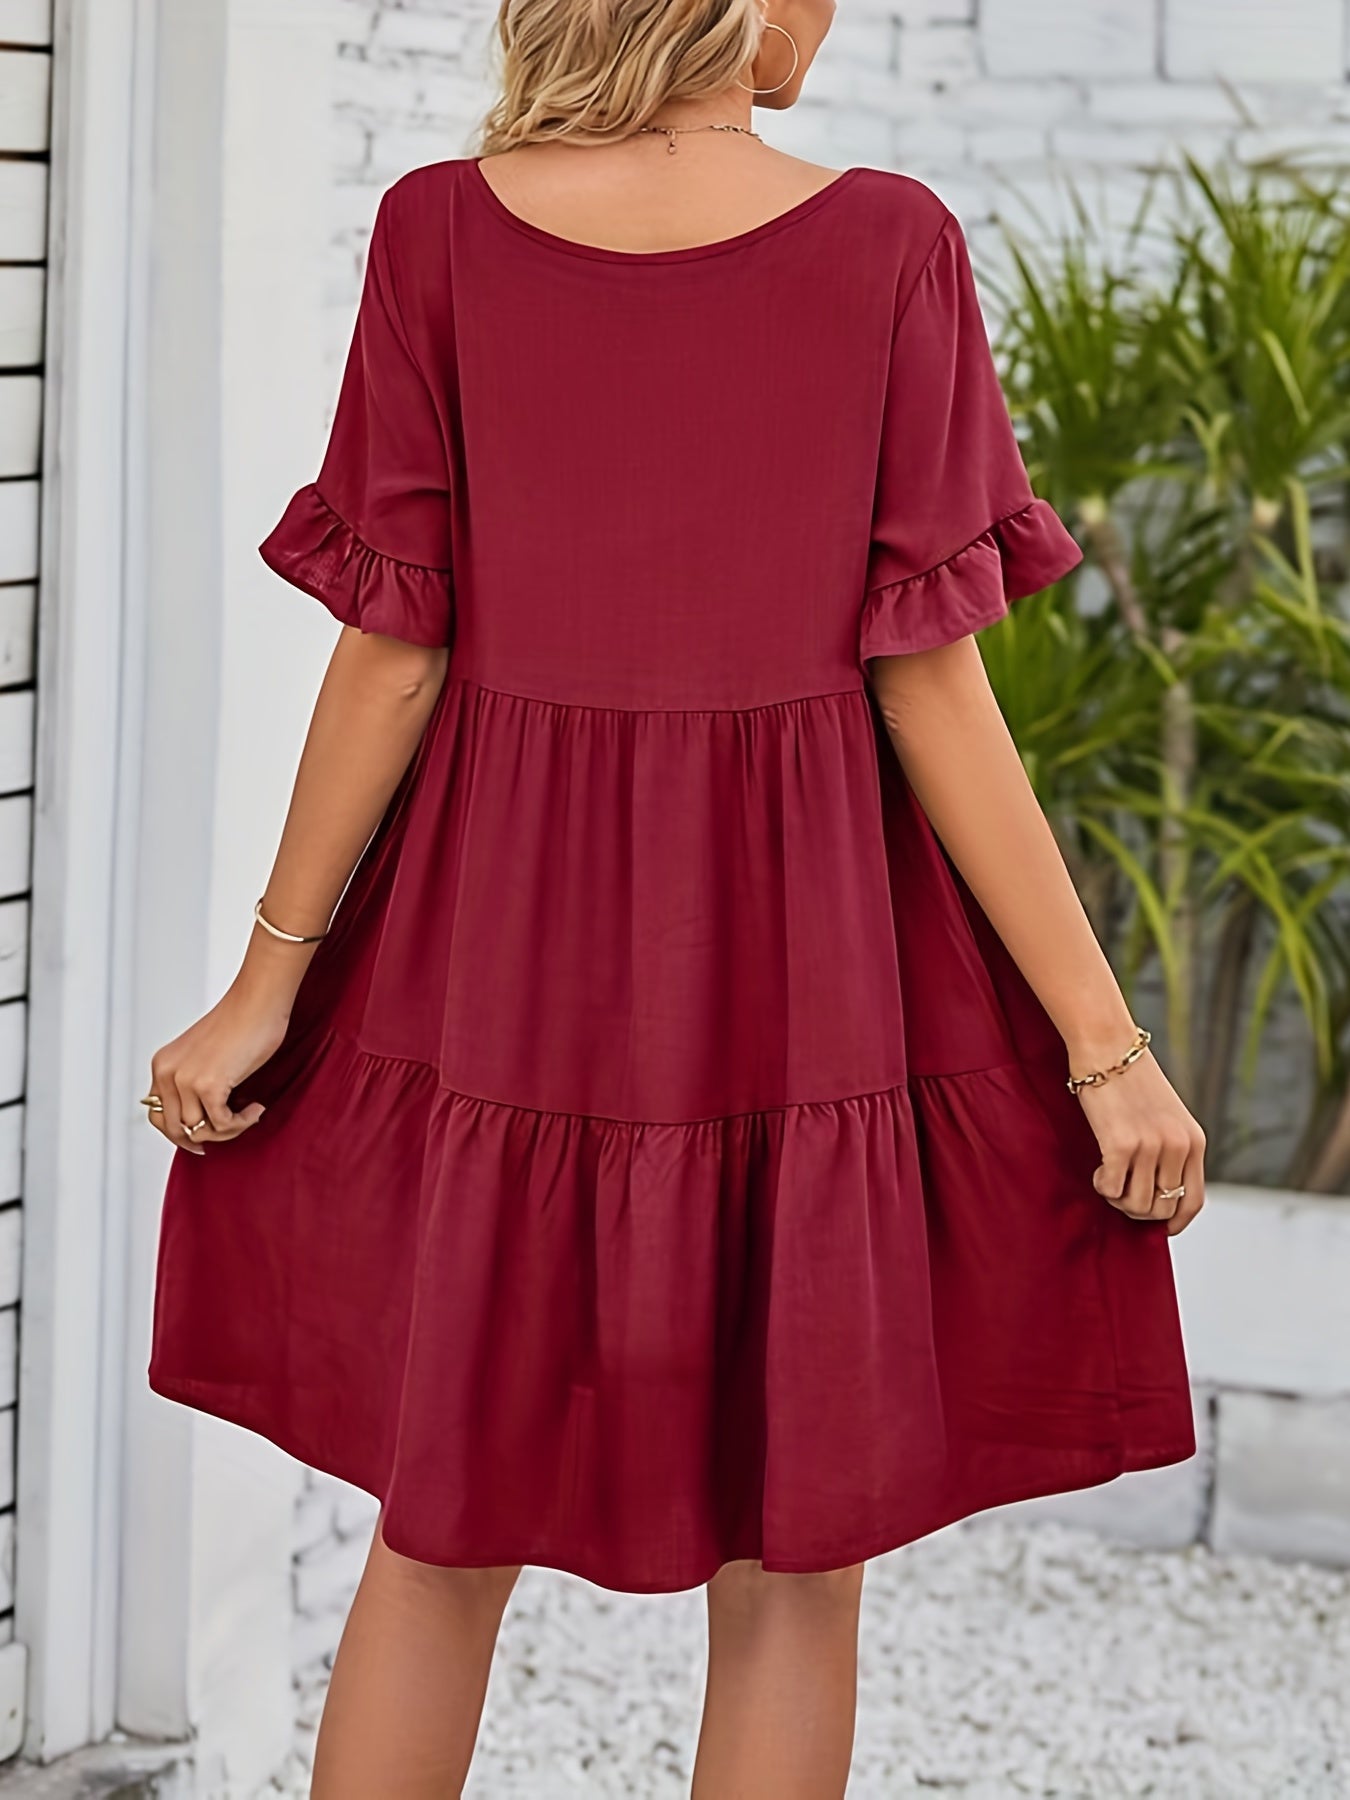 Bohemian Solid Mini Dress, Bohemian Short Ruffle Sleeve Mini Dress, Women's Dress